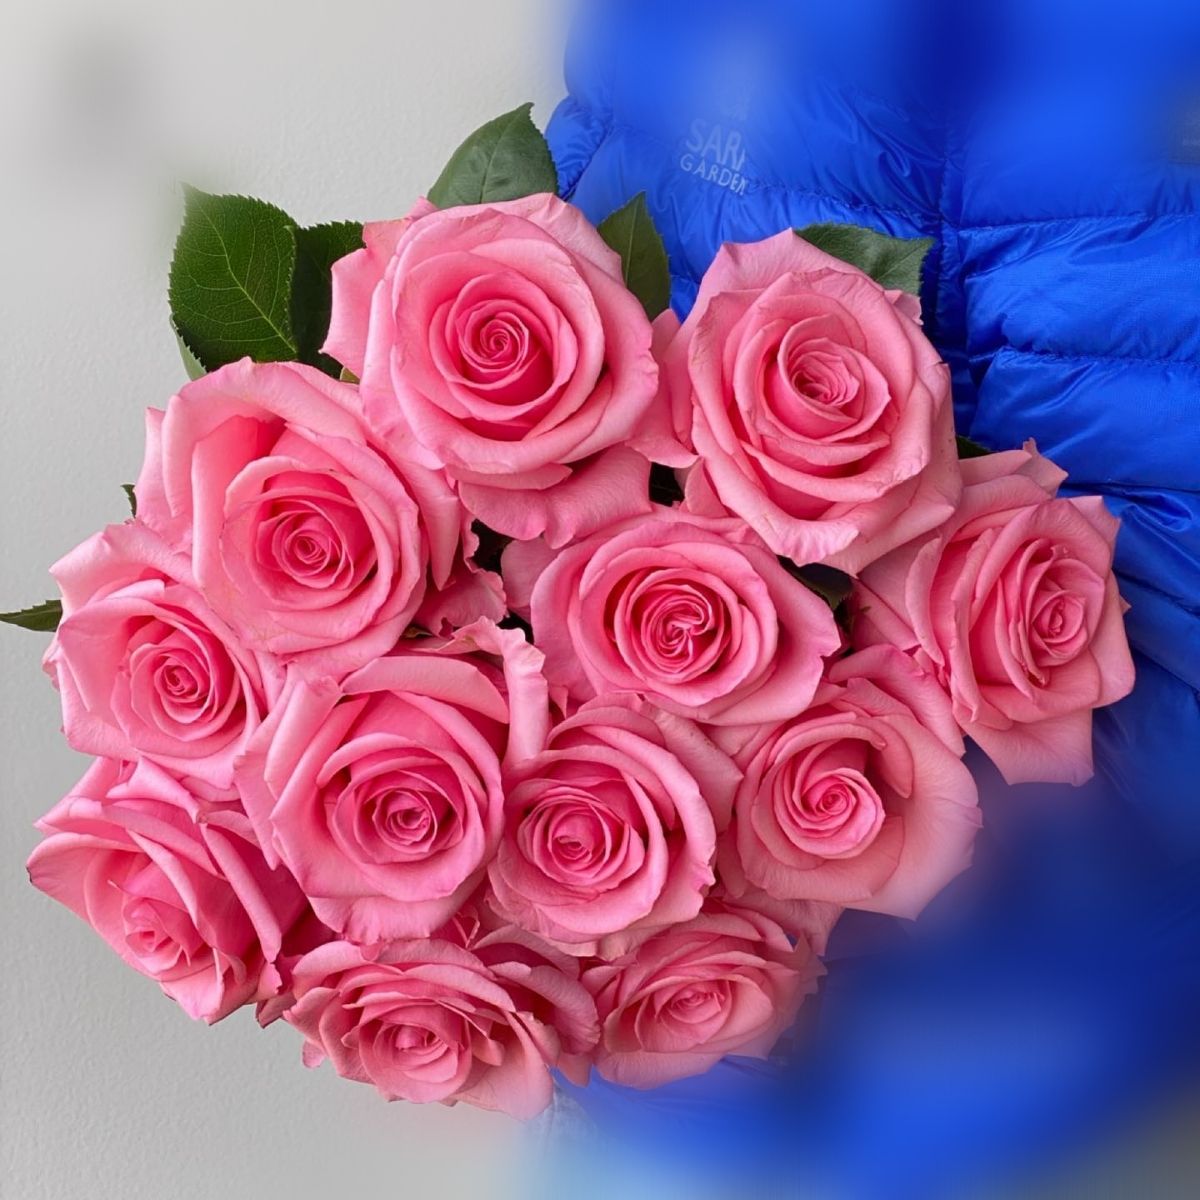 Opala Roses for Mother's Day - On Thursd